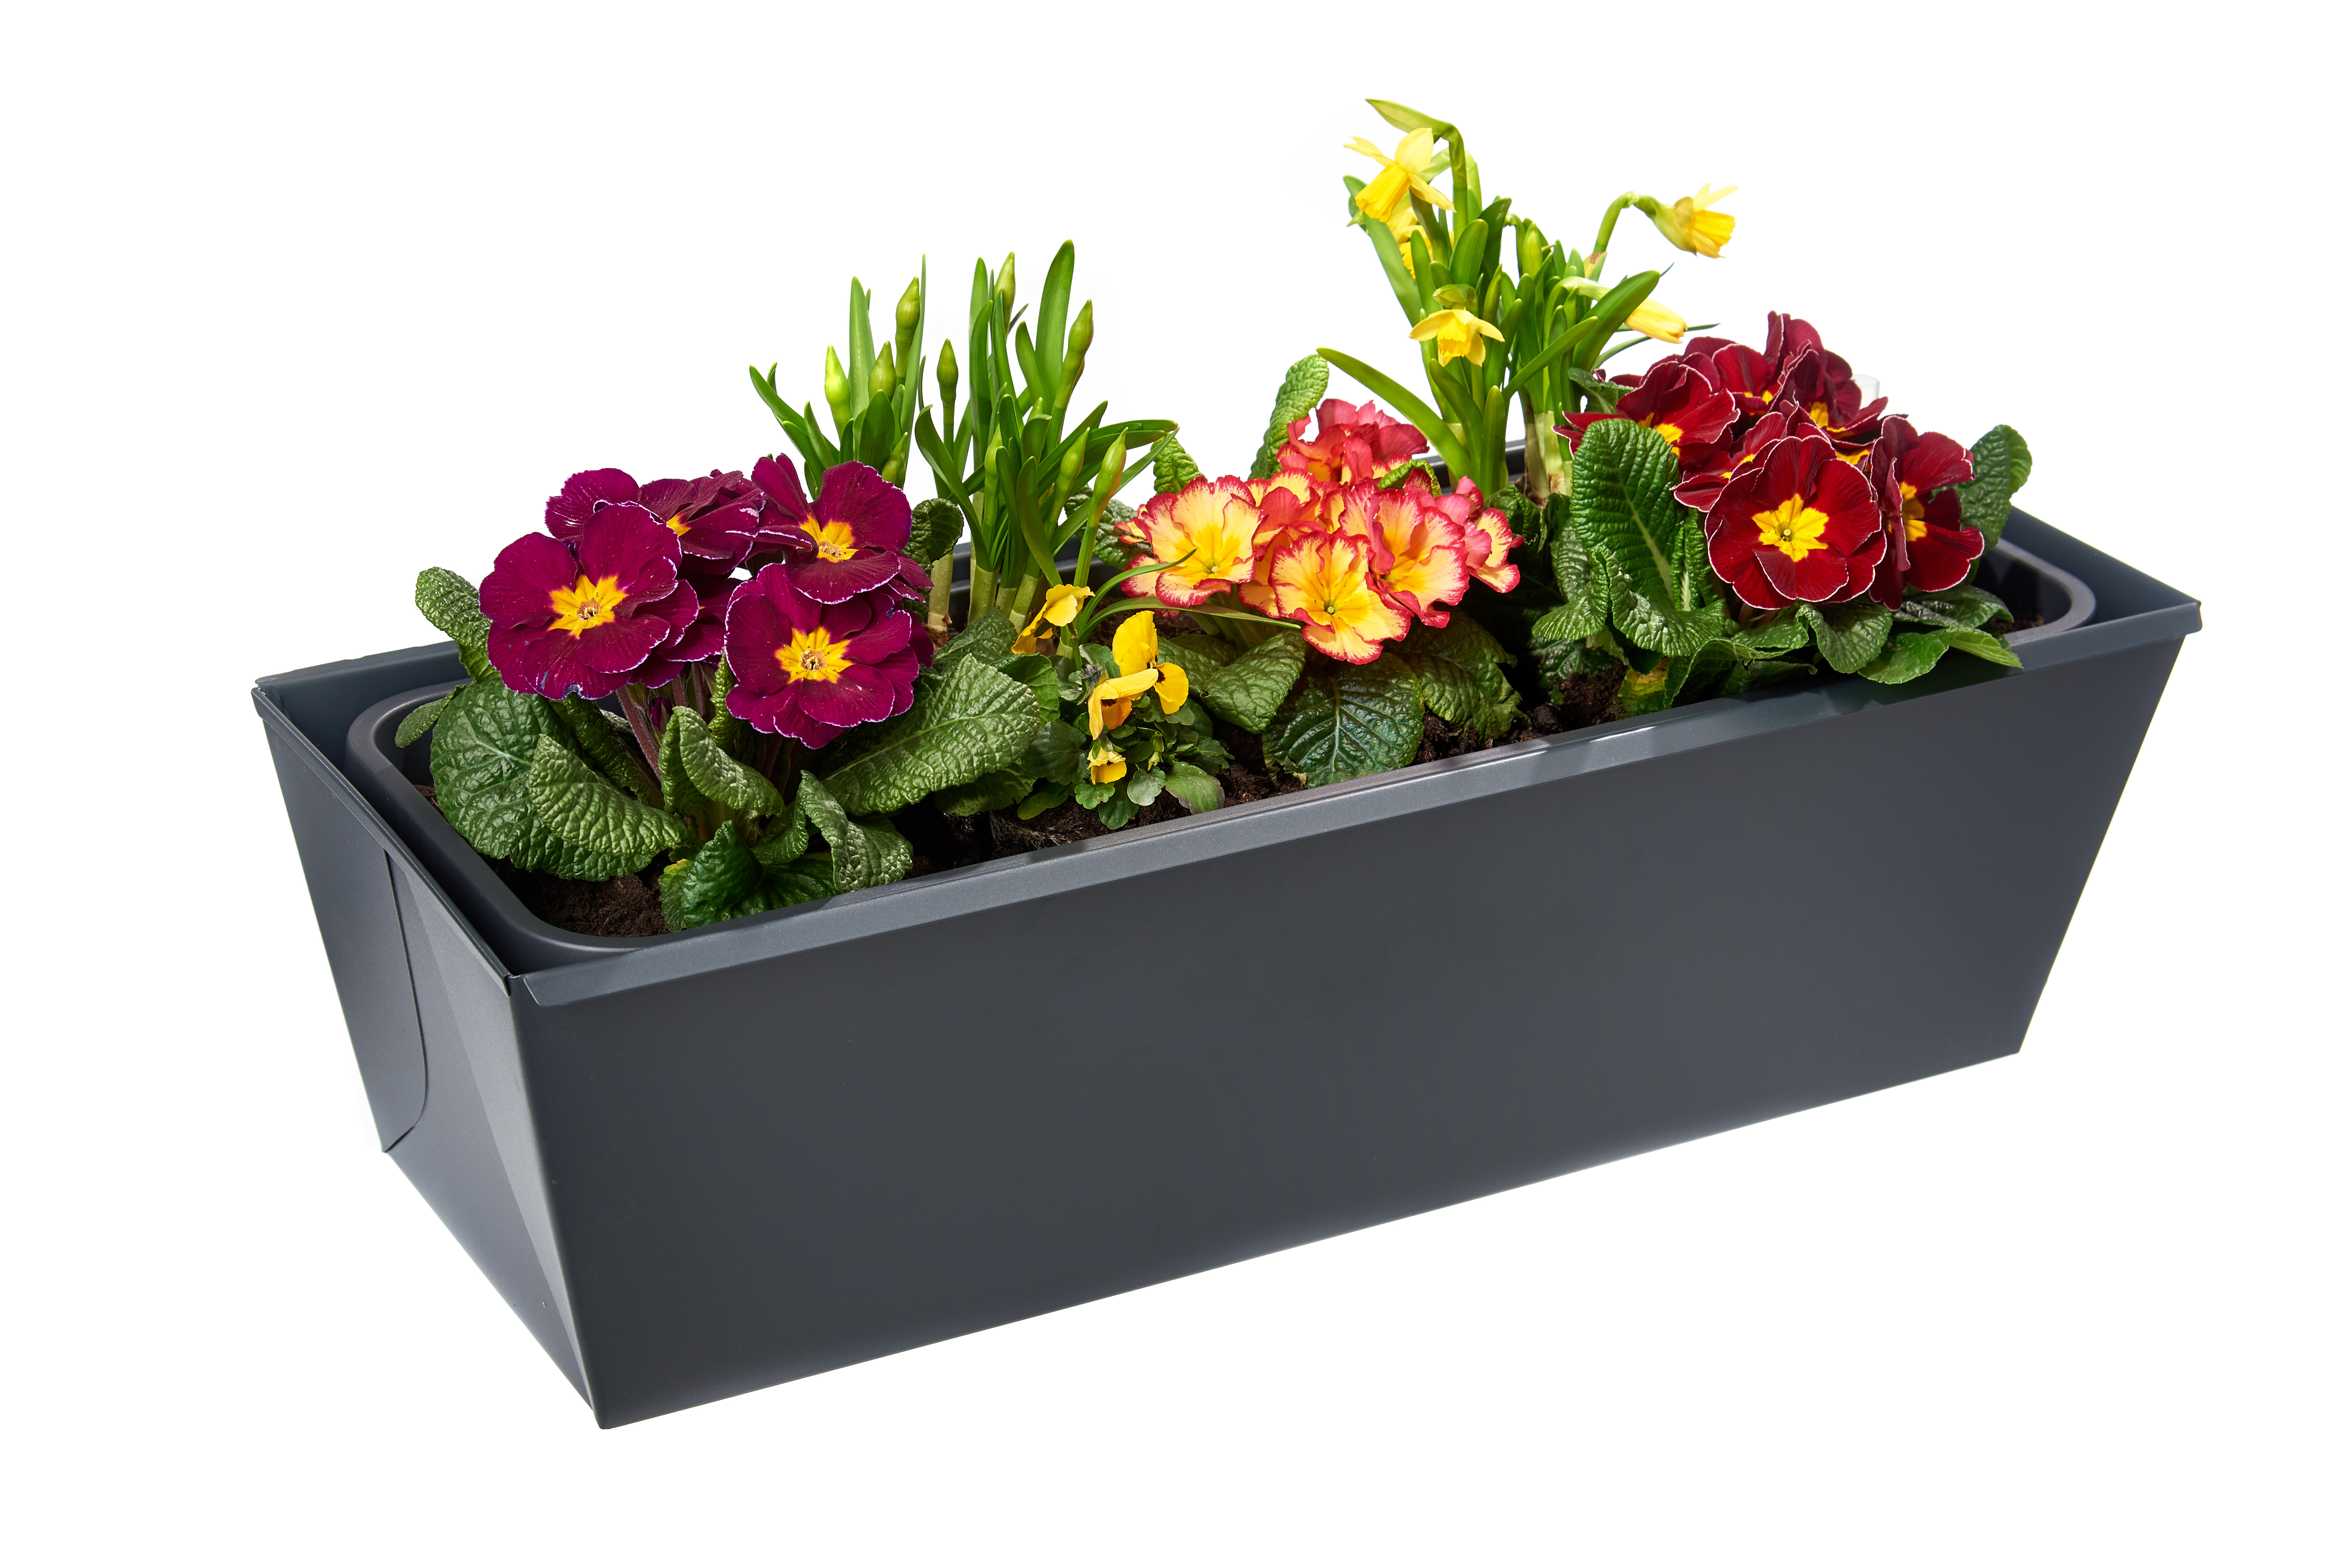 gabioka flowerbox 60cm de luxe anthrazit pulverbeschichtet (RAL 7016 glatt matt) mit Wasserstandsanzeige und Wasserspeicher